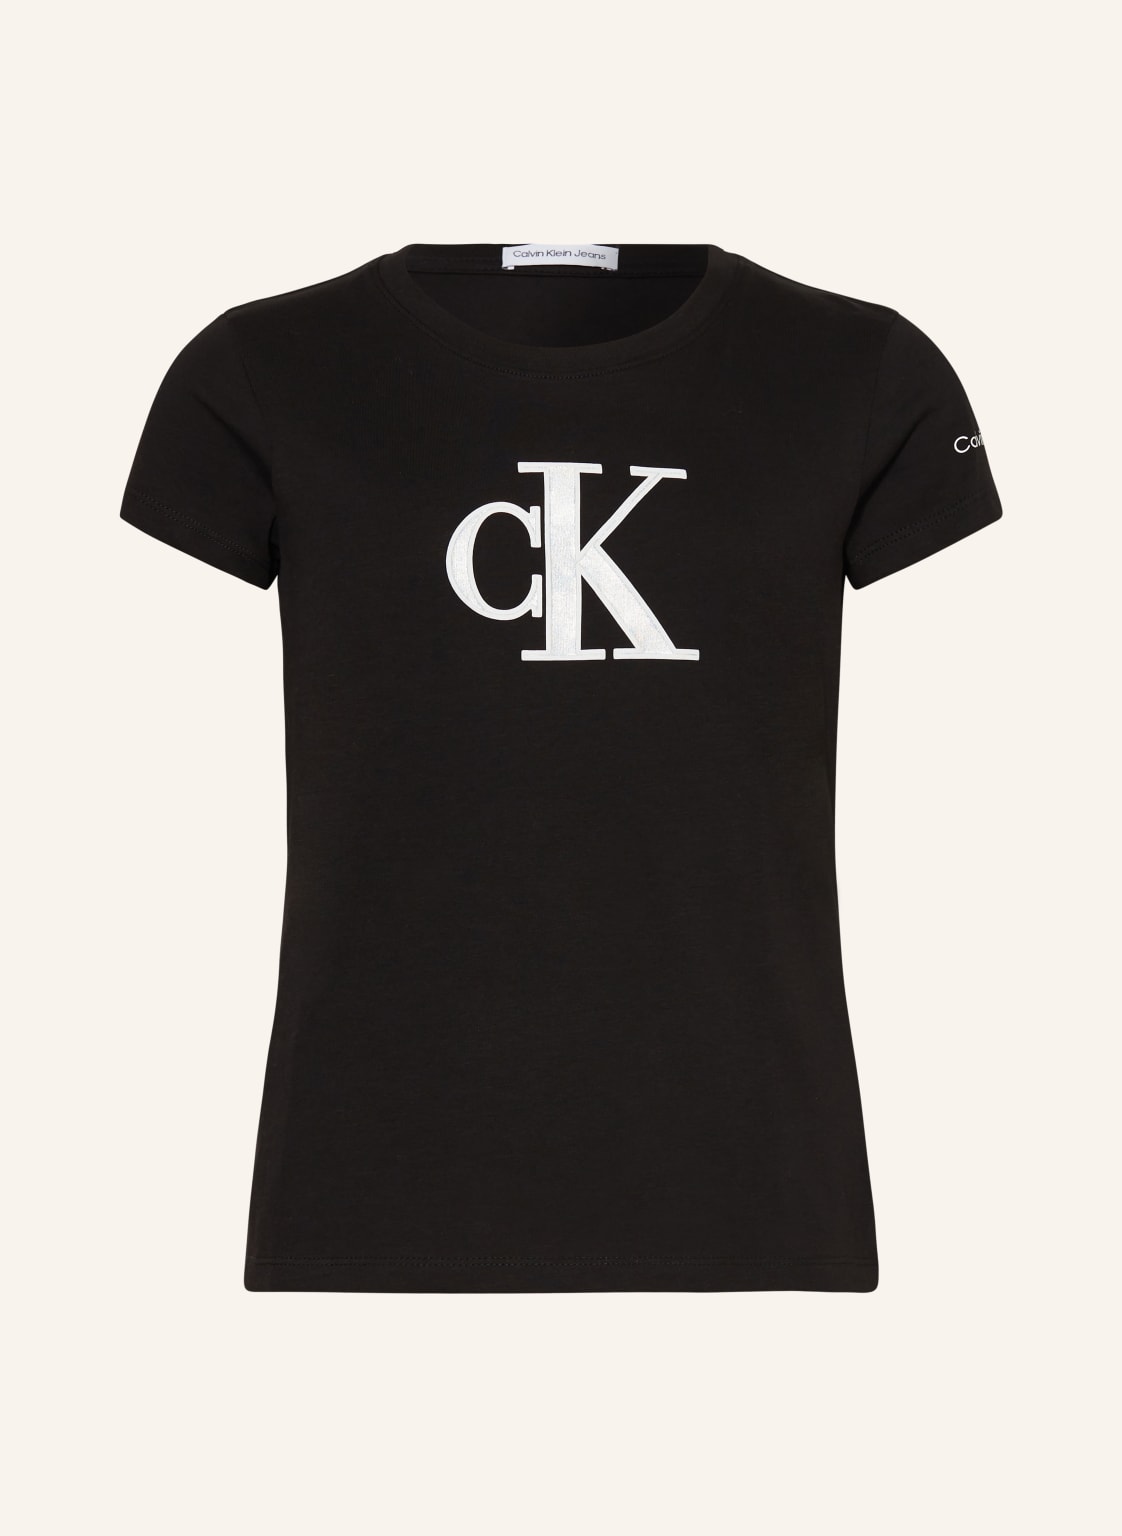 Calvin Klein T-Shirt schwarz von Calvin Klein